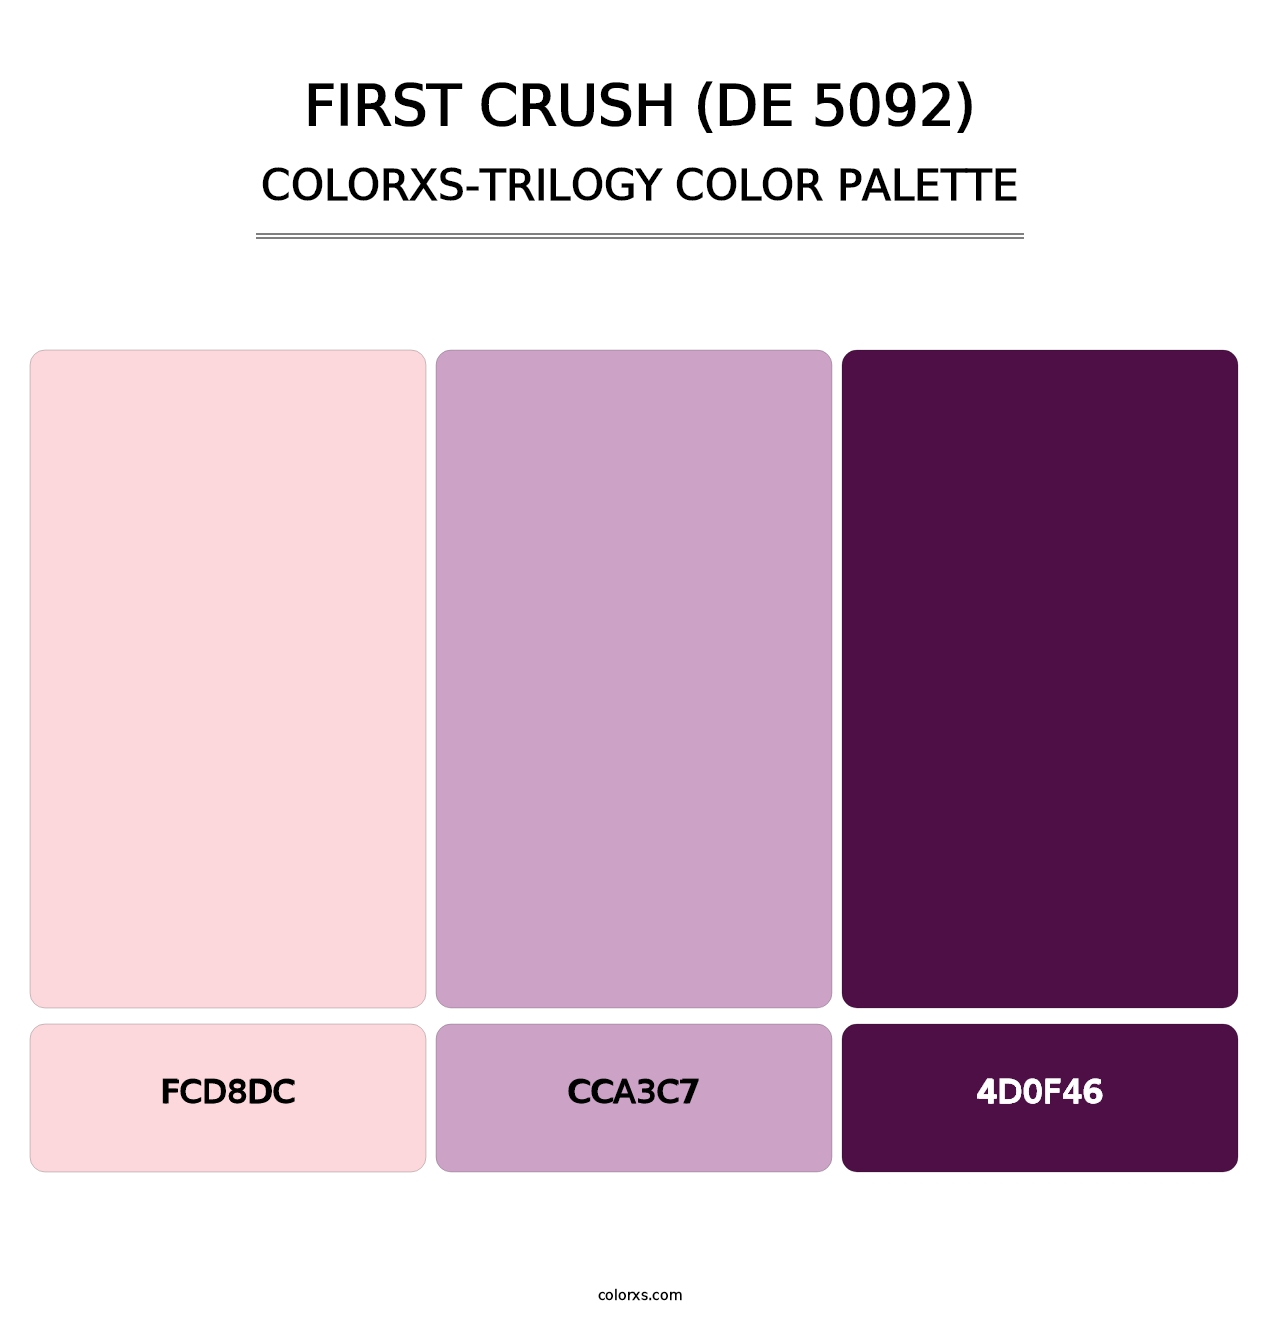 First Crush (DE 5092) - Colorxs Trilogy Palette